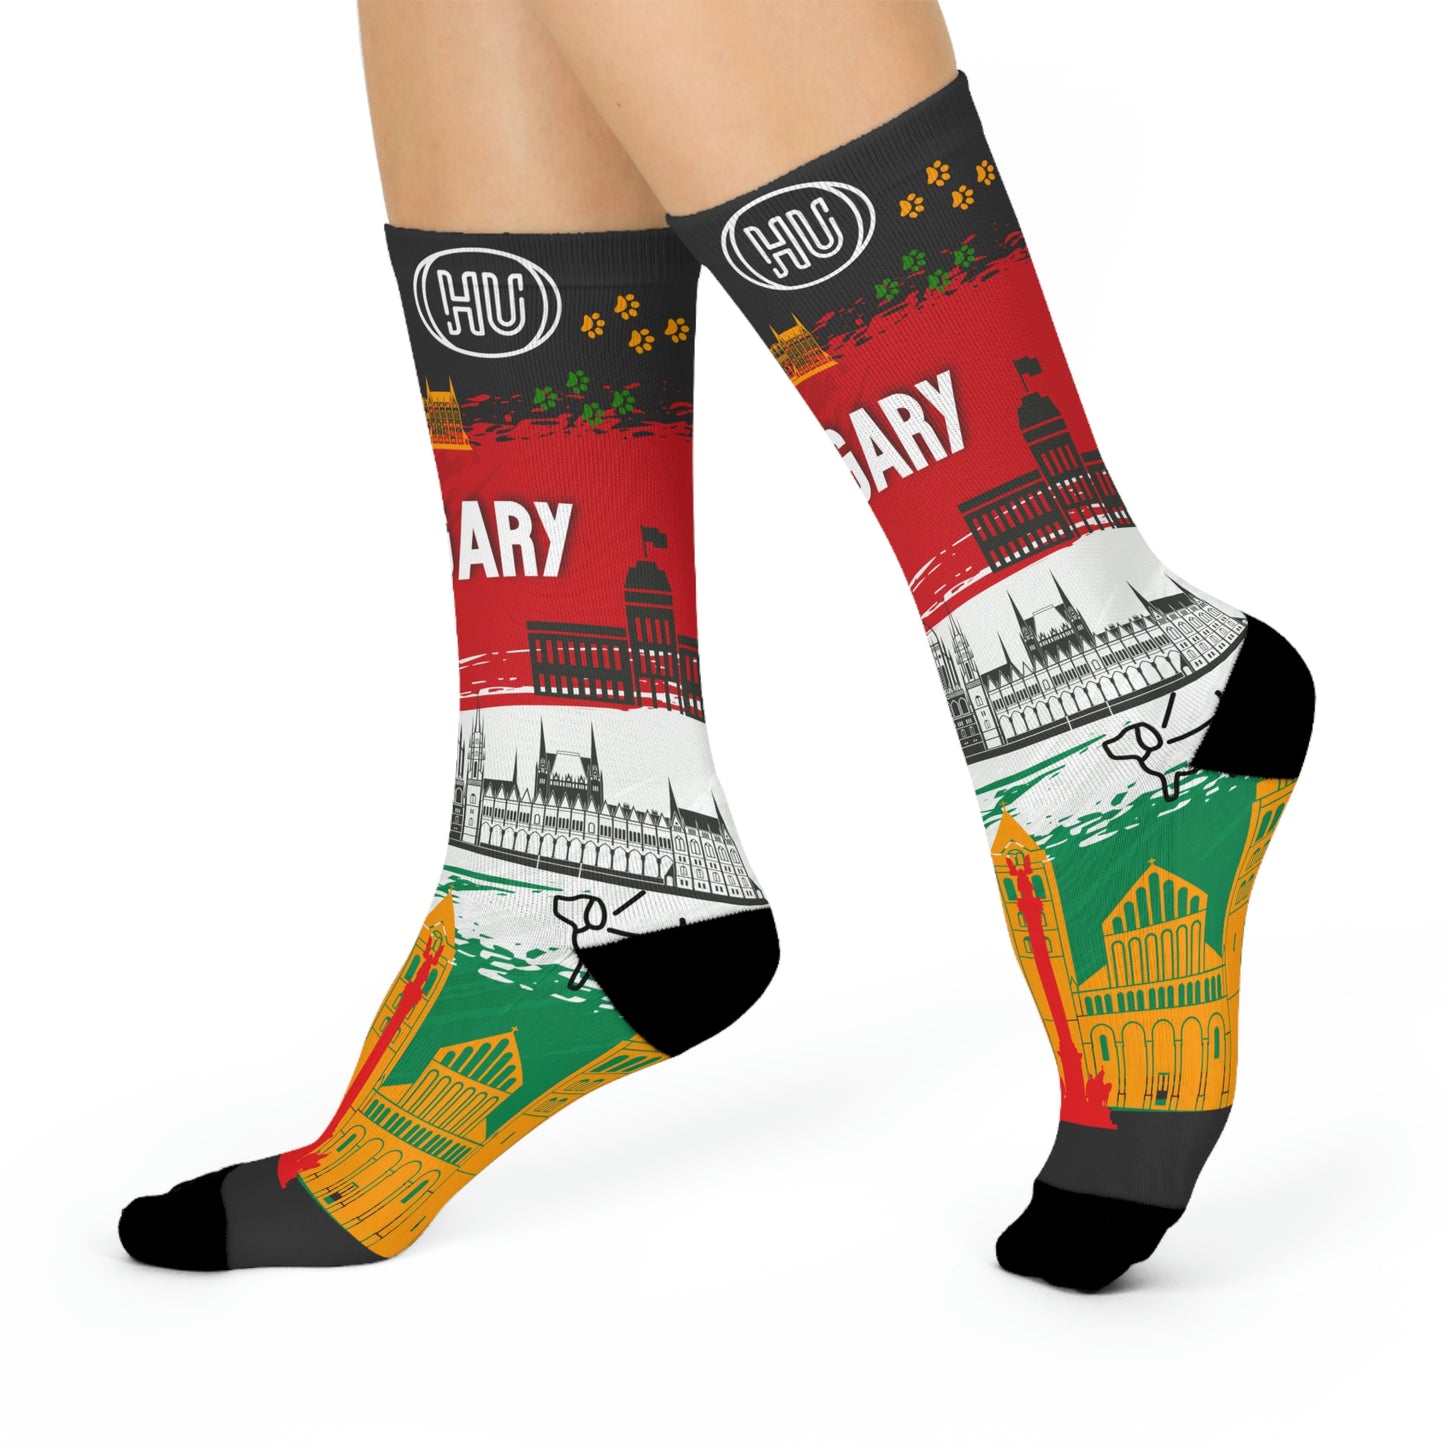 Hungary socks